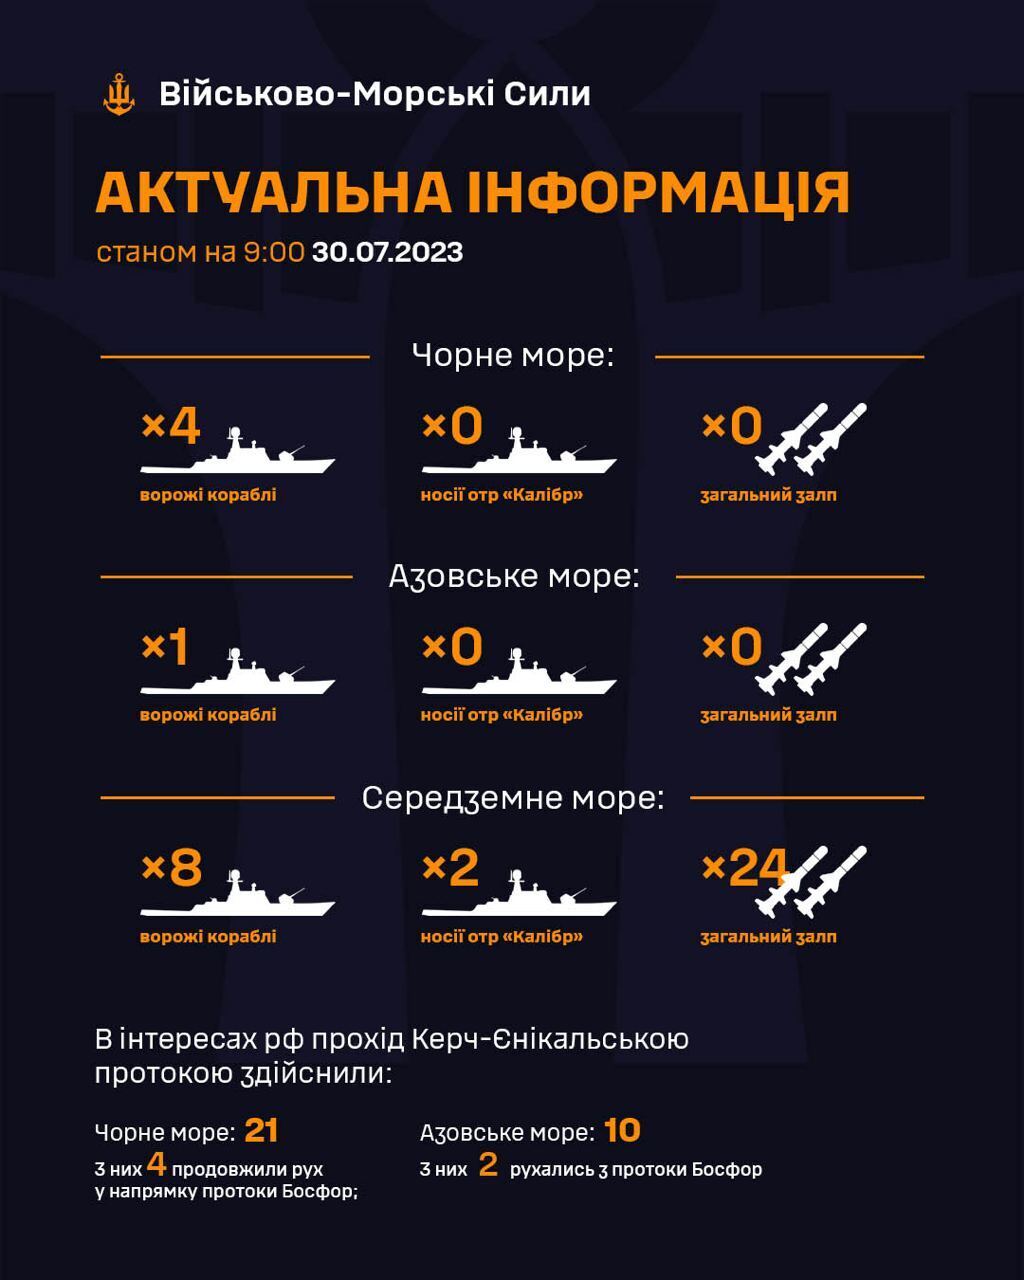 Россия держит в Черном море на боевом дежурстве 4 корабля: ракетоносителей пока нет